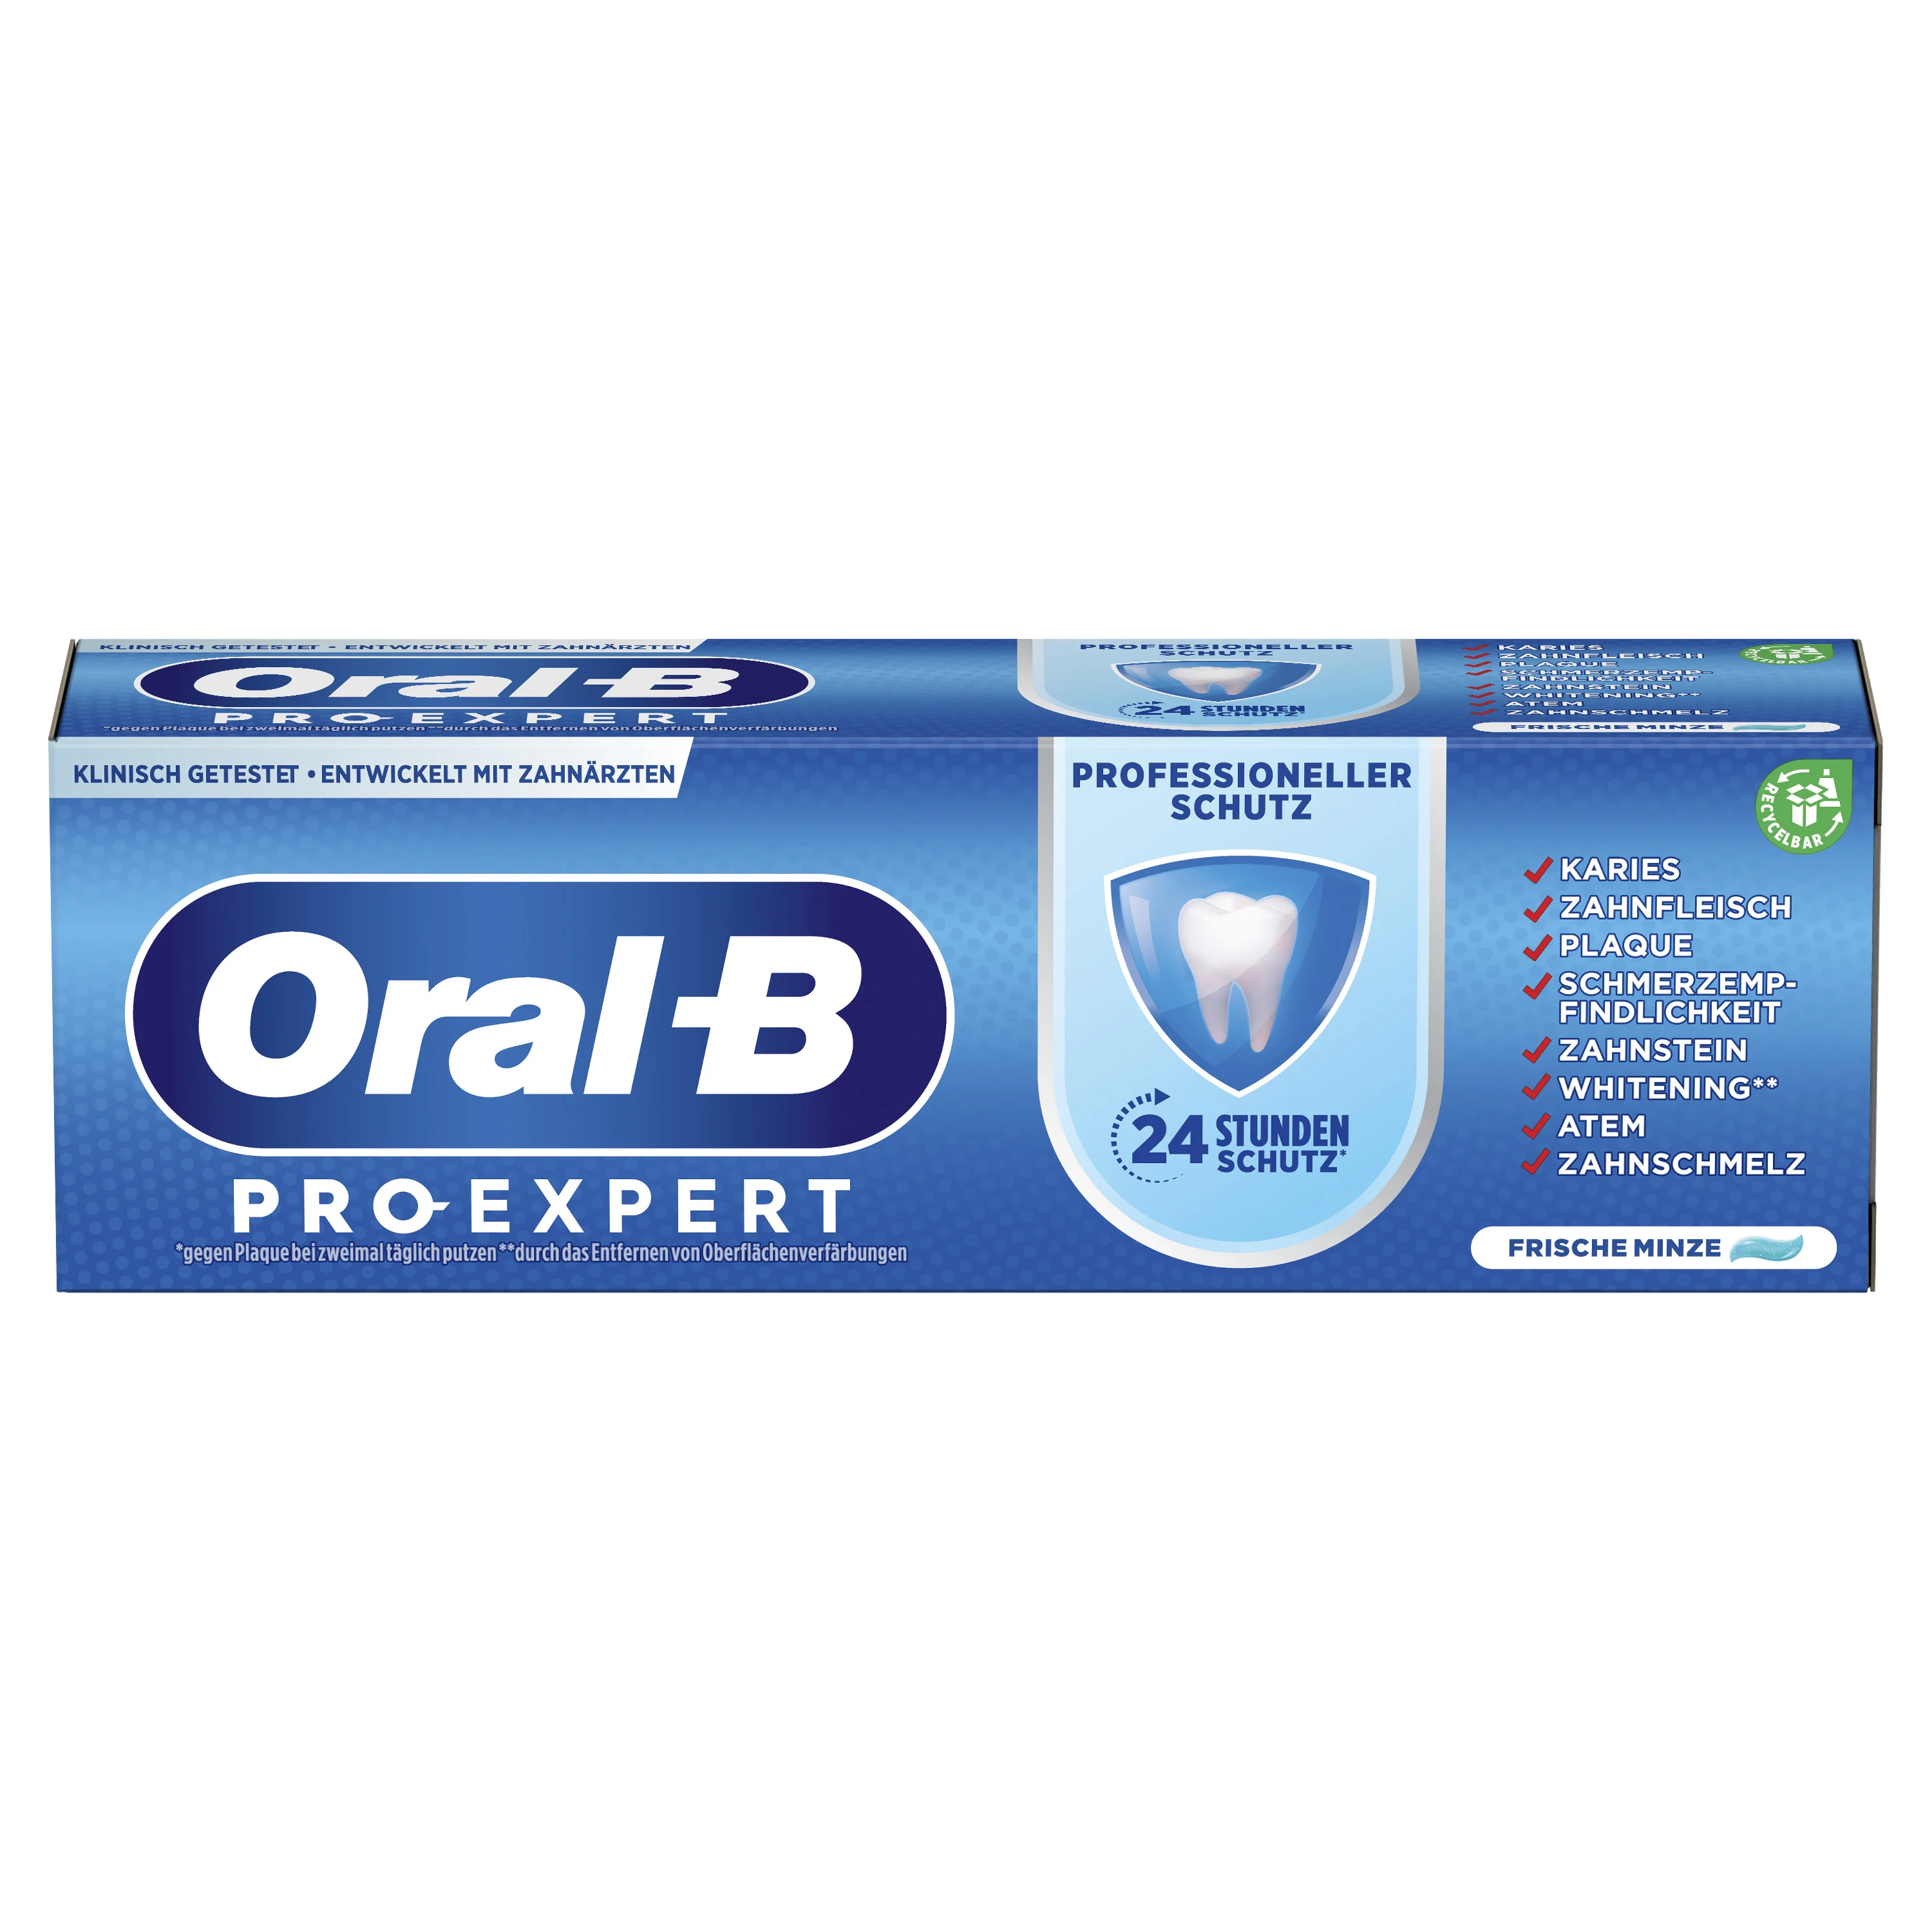 Oral-B Pro-Expert Professioneller Schutz Zahncreme 